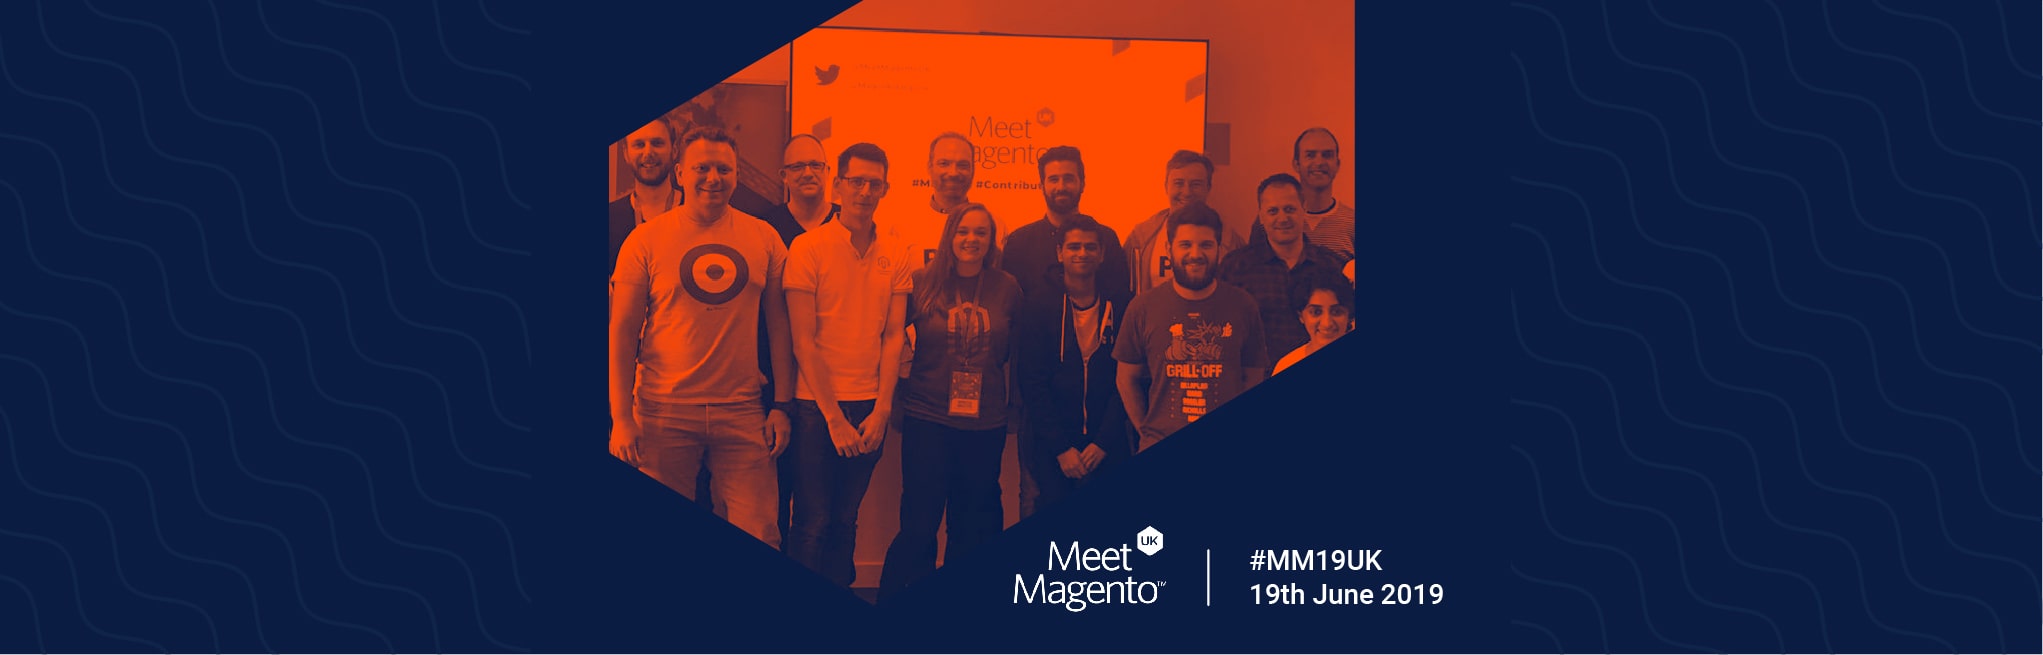 banner-Recapitulating-Meet-Magento-UK-2019